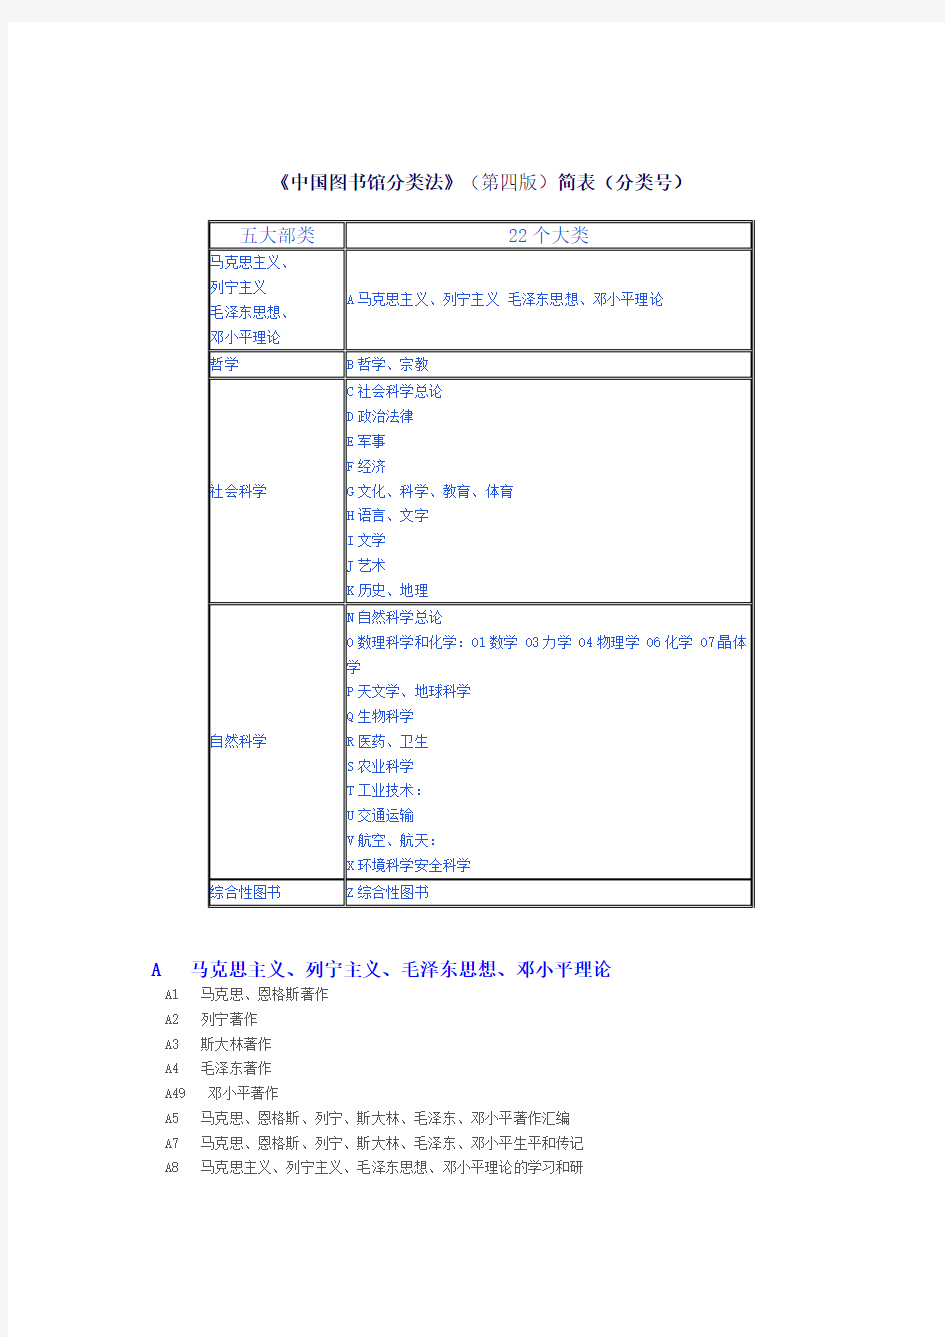 《中国图书馆分类法》分类号查询(NEW)